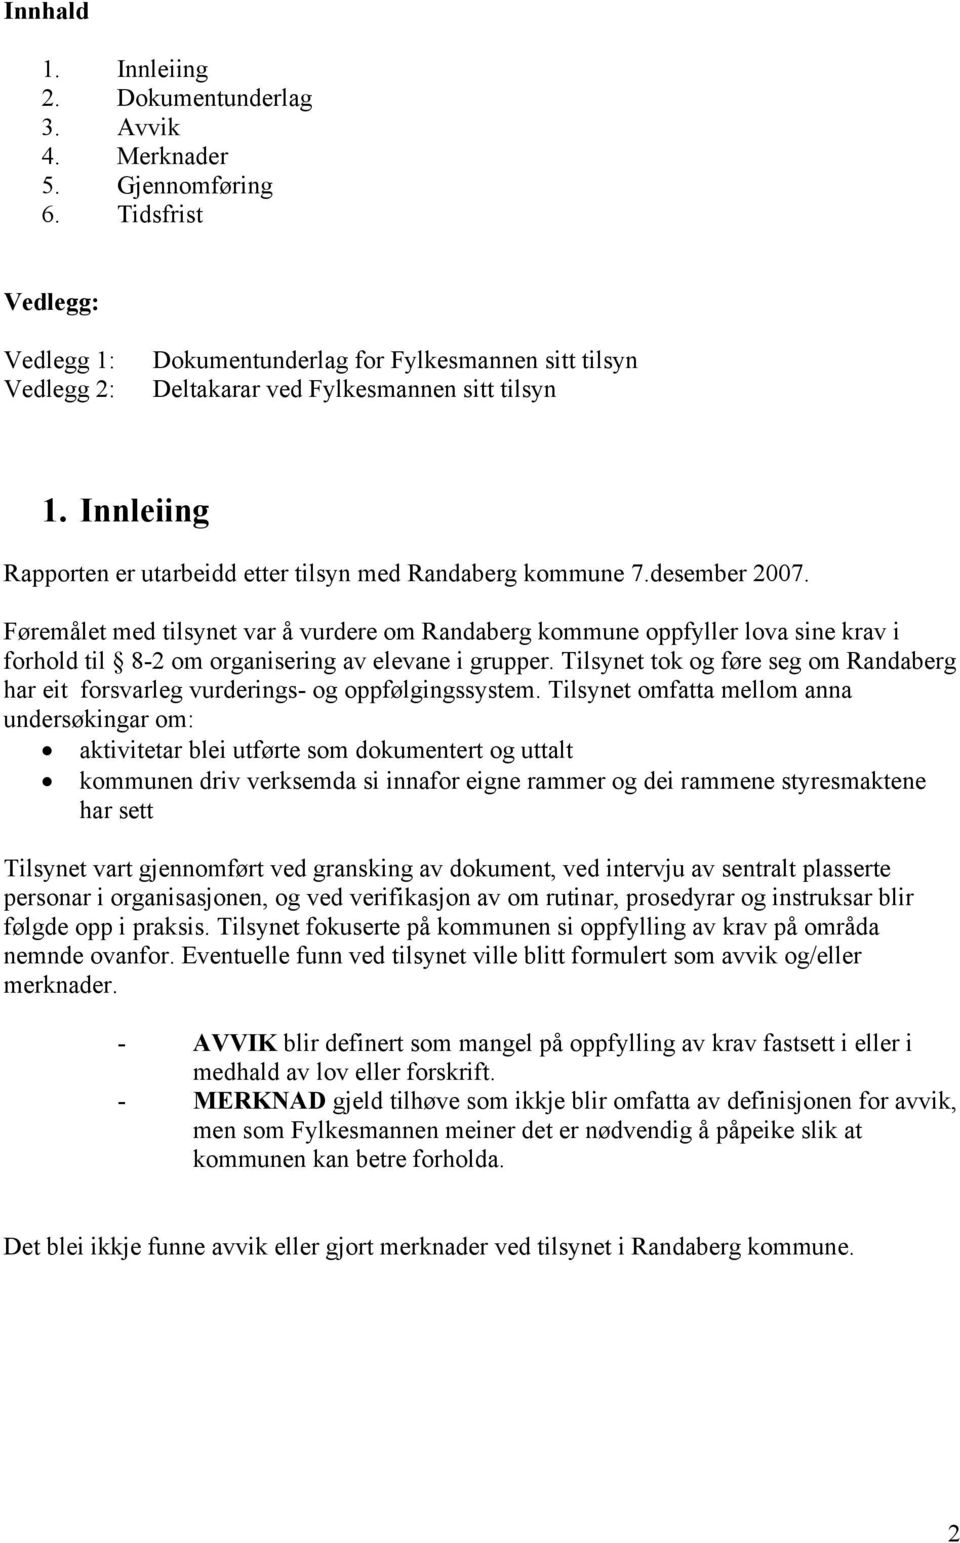 desember 2007. Føremålet med tilsynet var å vurdere om Randaberg kommune oppfyller lova sine krav i forhold til 8-2 om organisering av elevane i grupper.